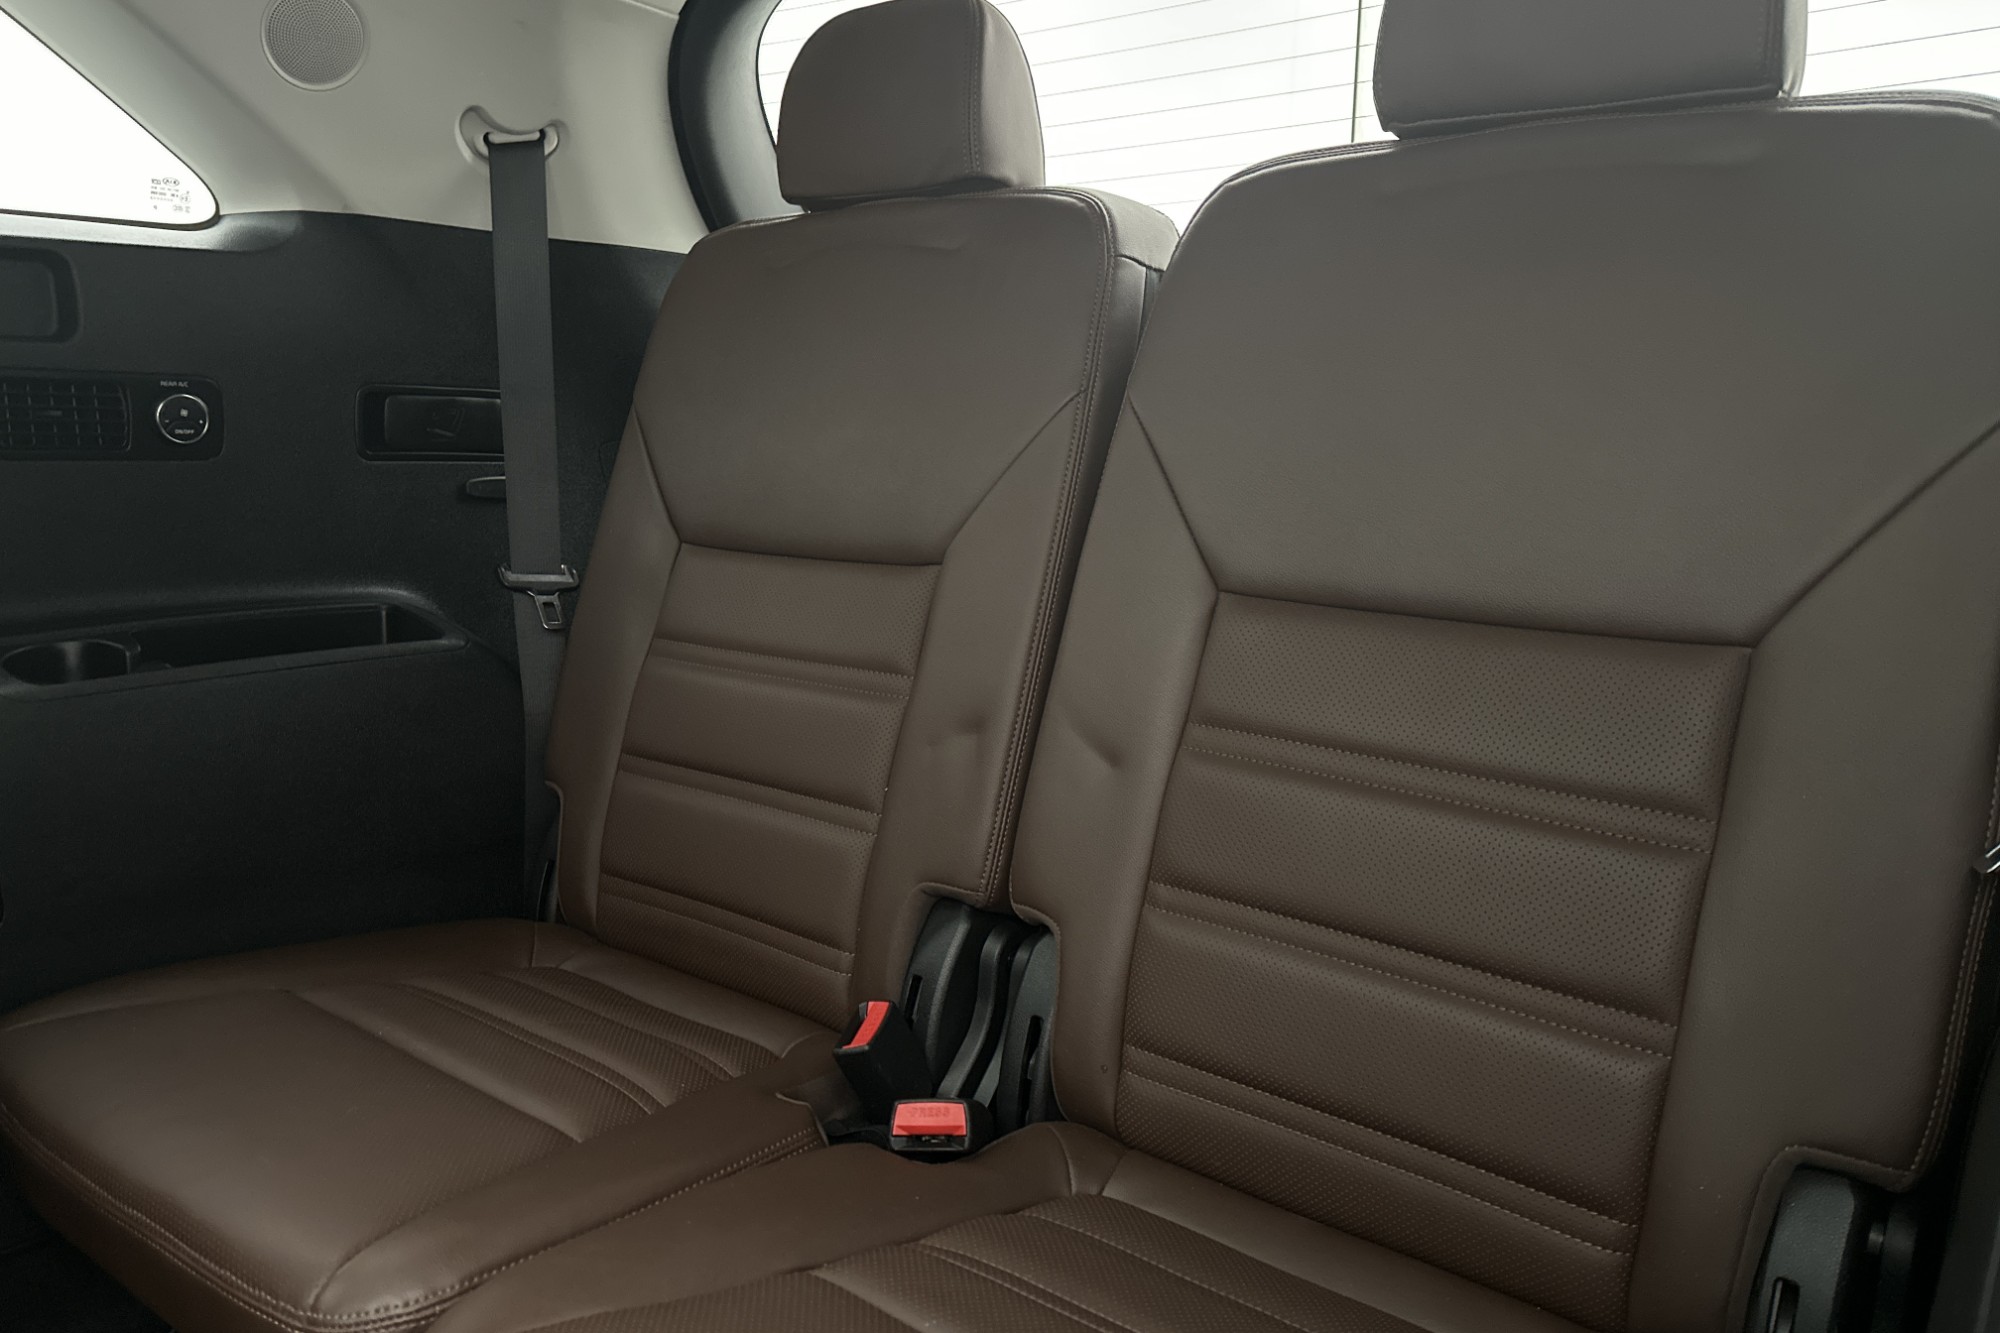 Kia Sorento 2.2 CRDi 200hk AWD 7-Sits Pano 360° Navi Skinn